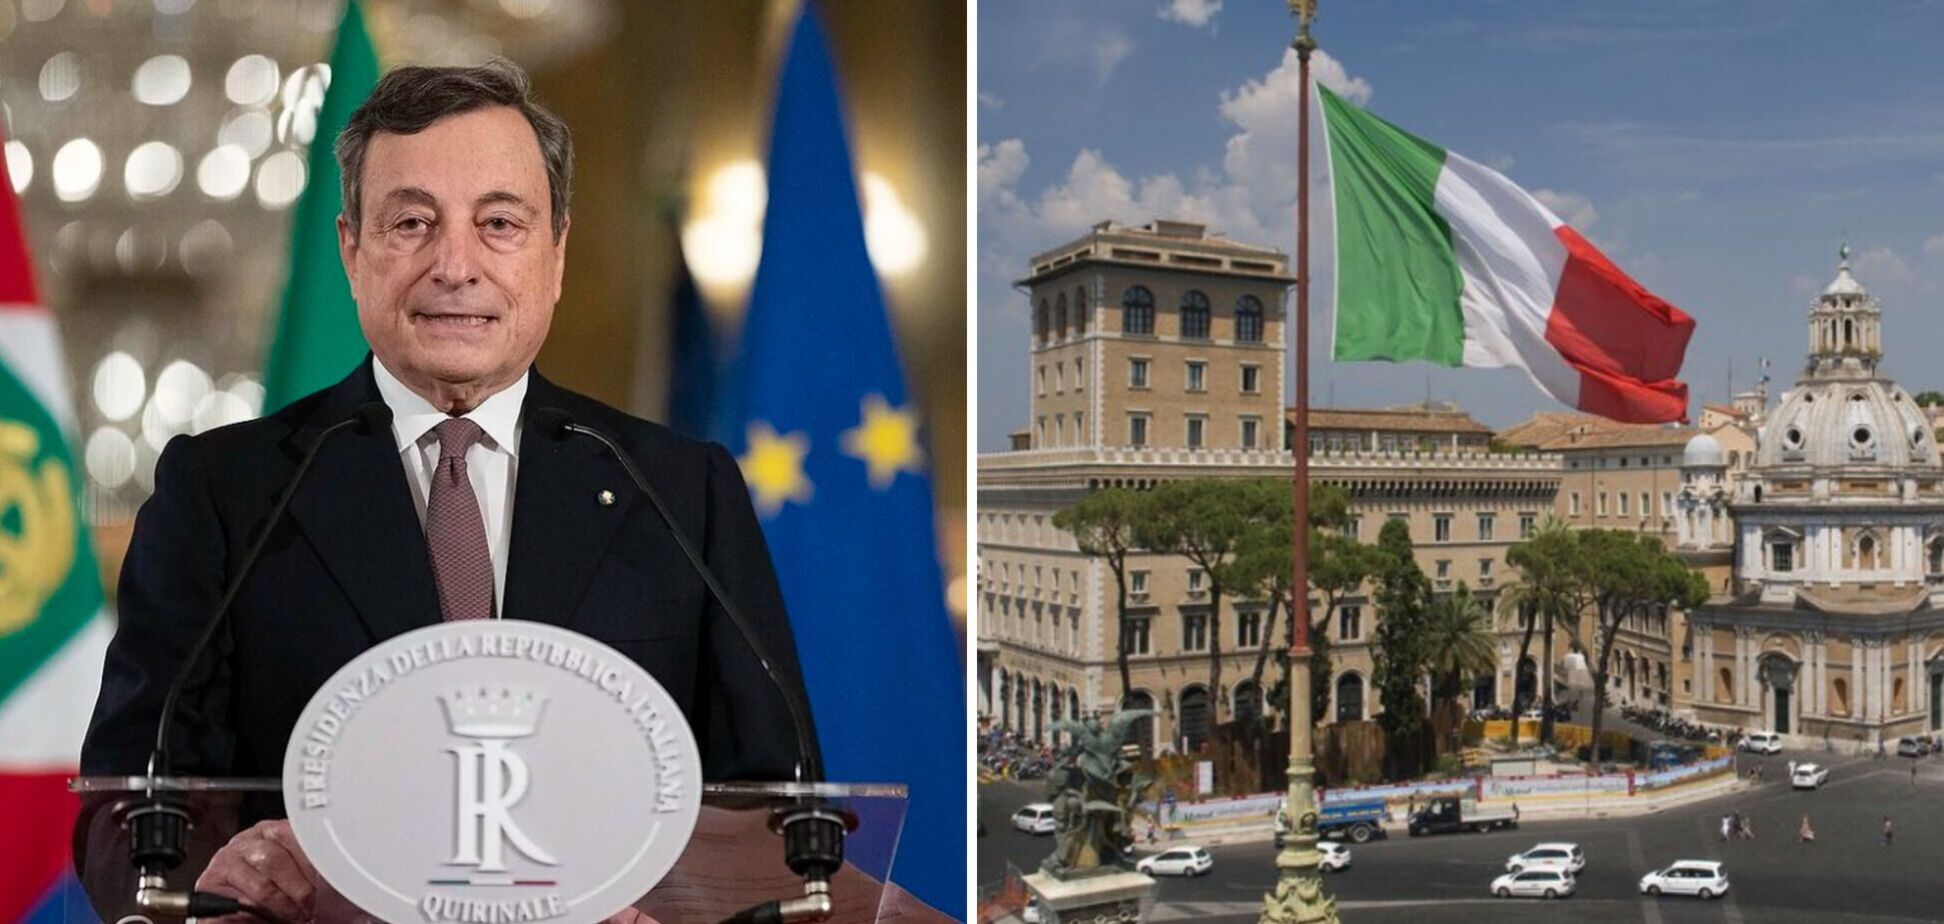 Драги объявил об отставке, президент ее не принял: что известно о парламентском кризисе в Италии